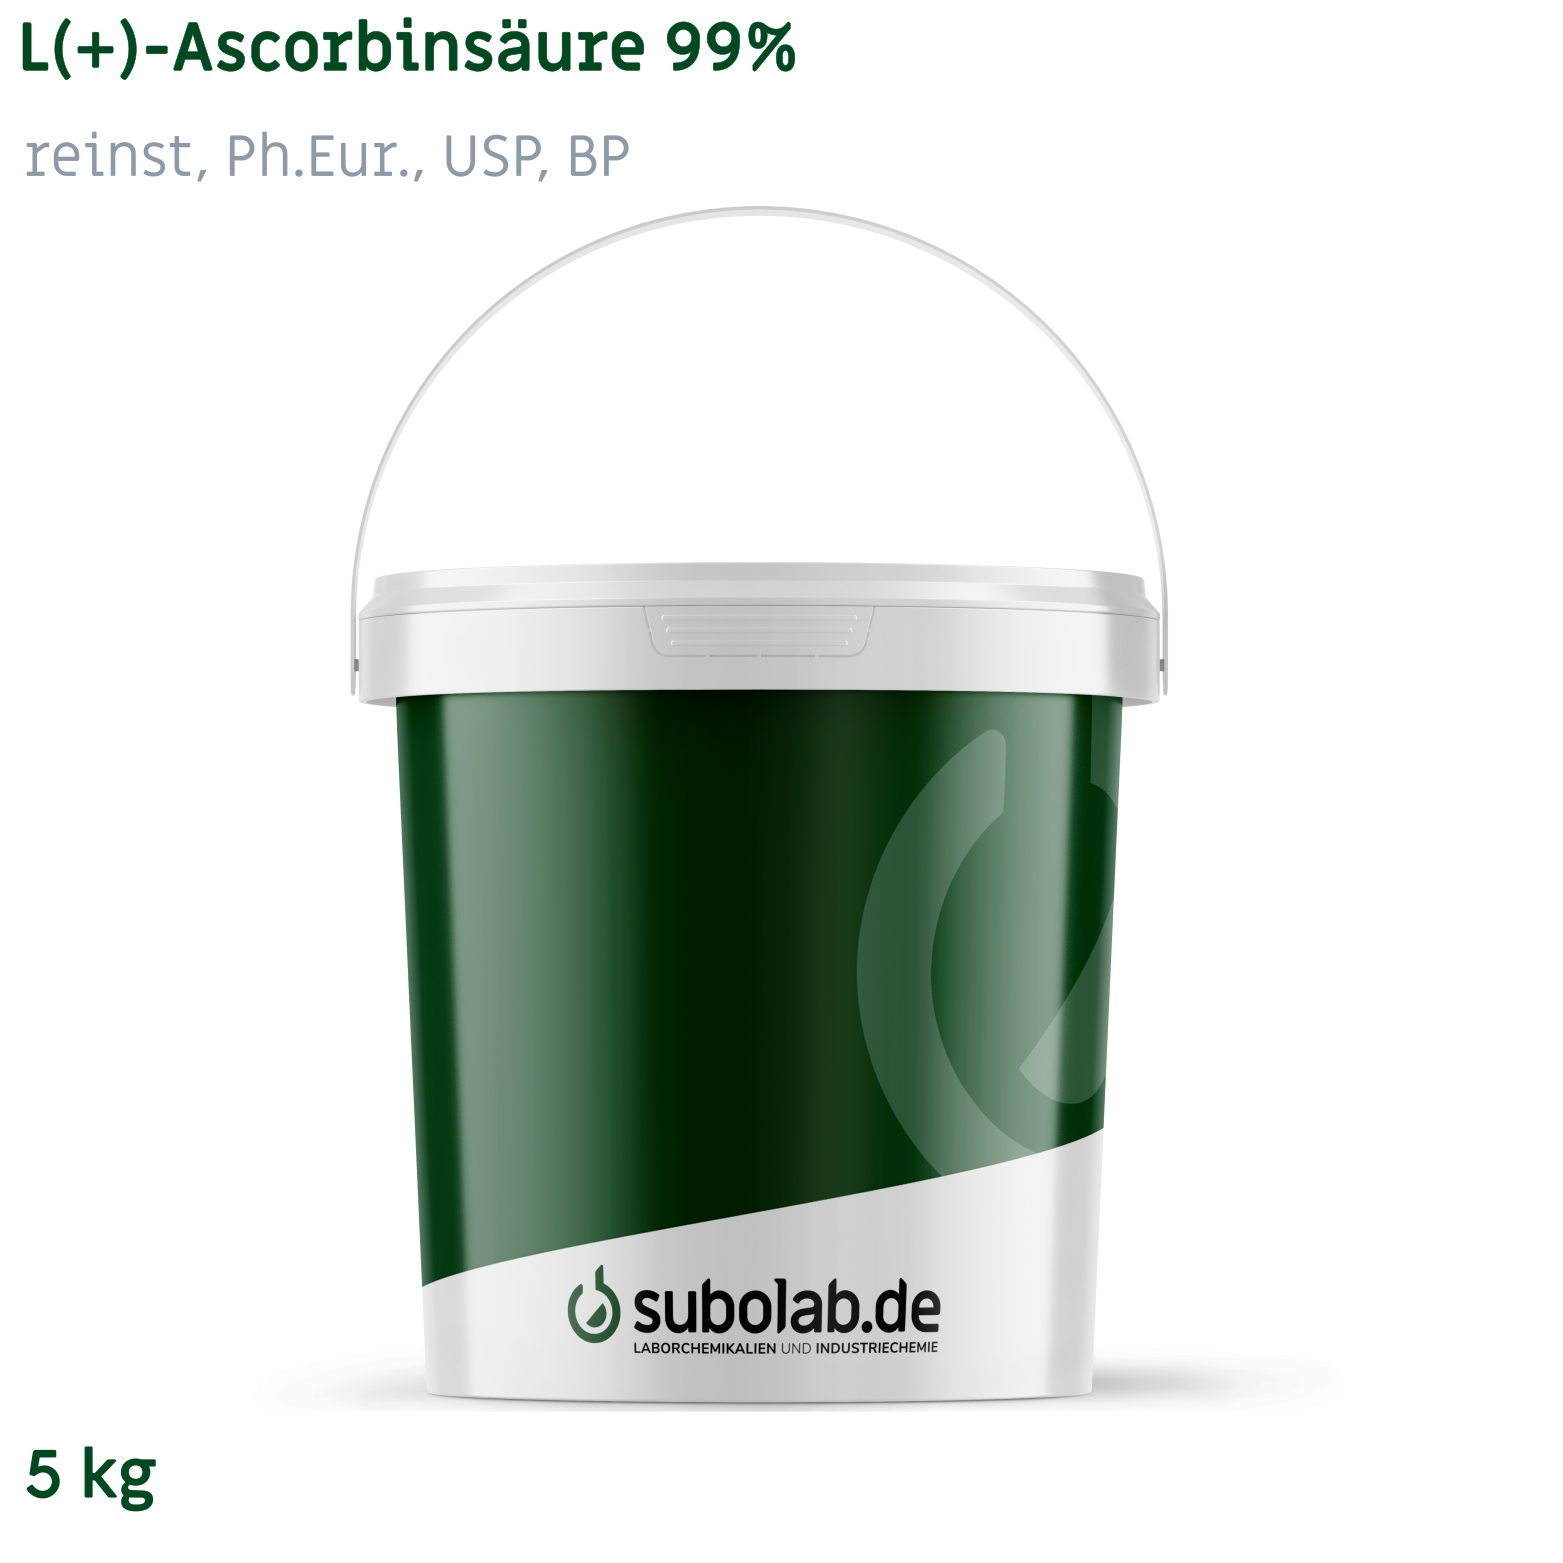 Bild von L(+)-Ascorbinsäure 99% reinst, Ph.Eur., USP, BP (5 kg)